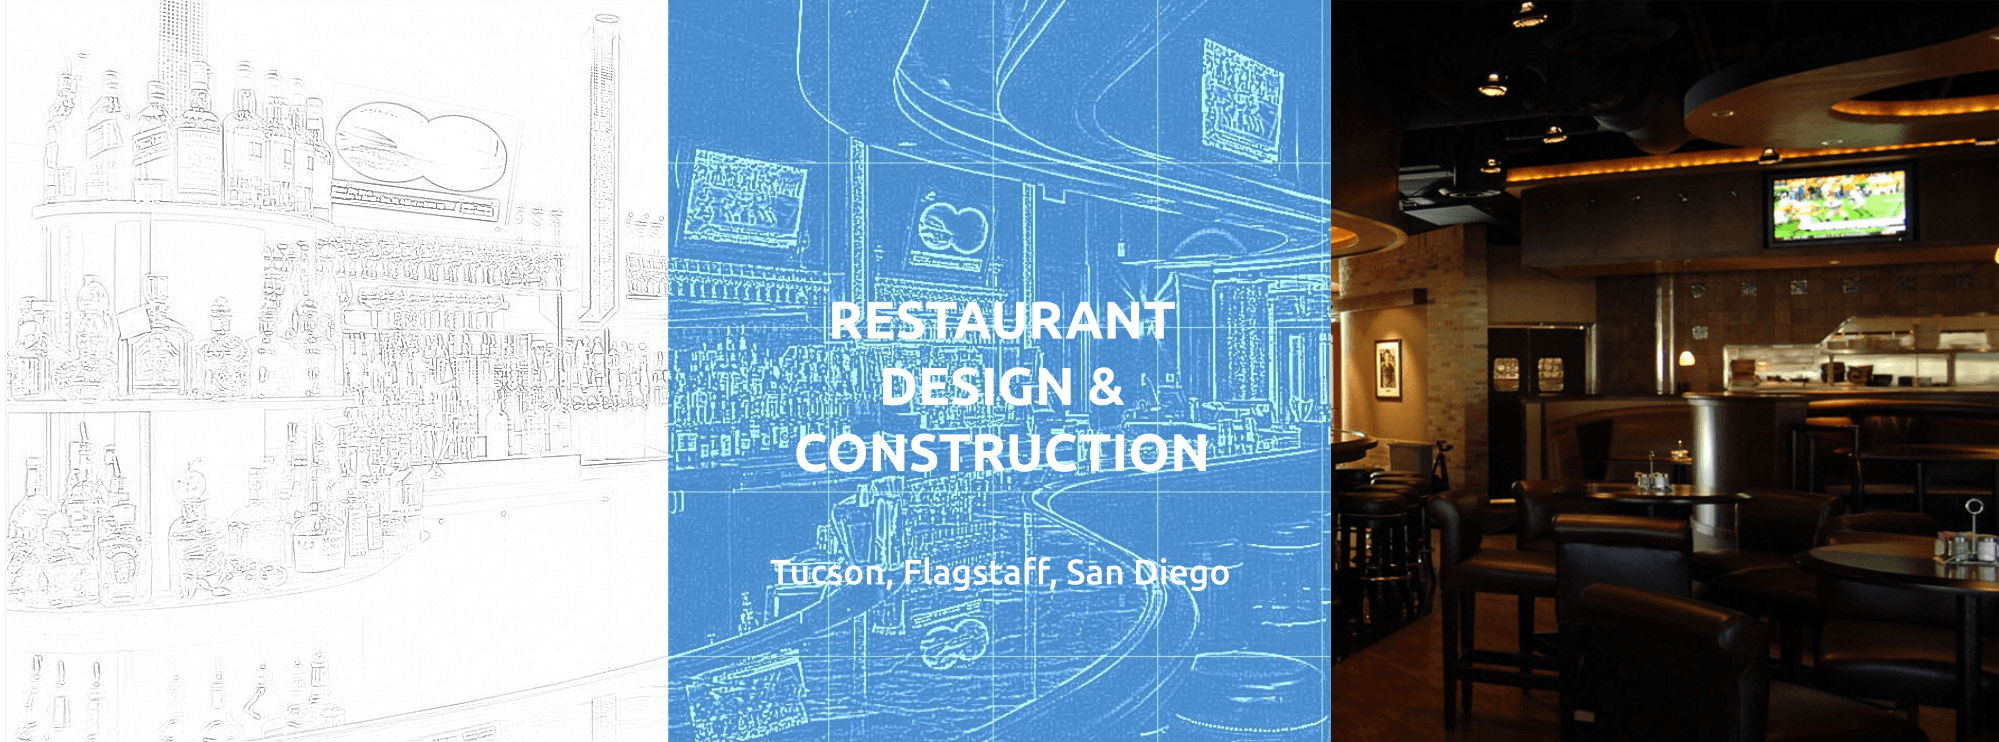 Tucson restaurant design & construction